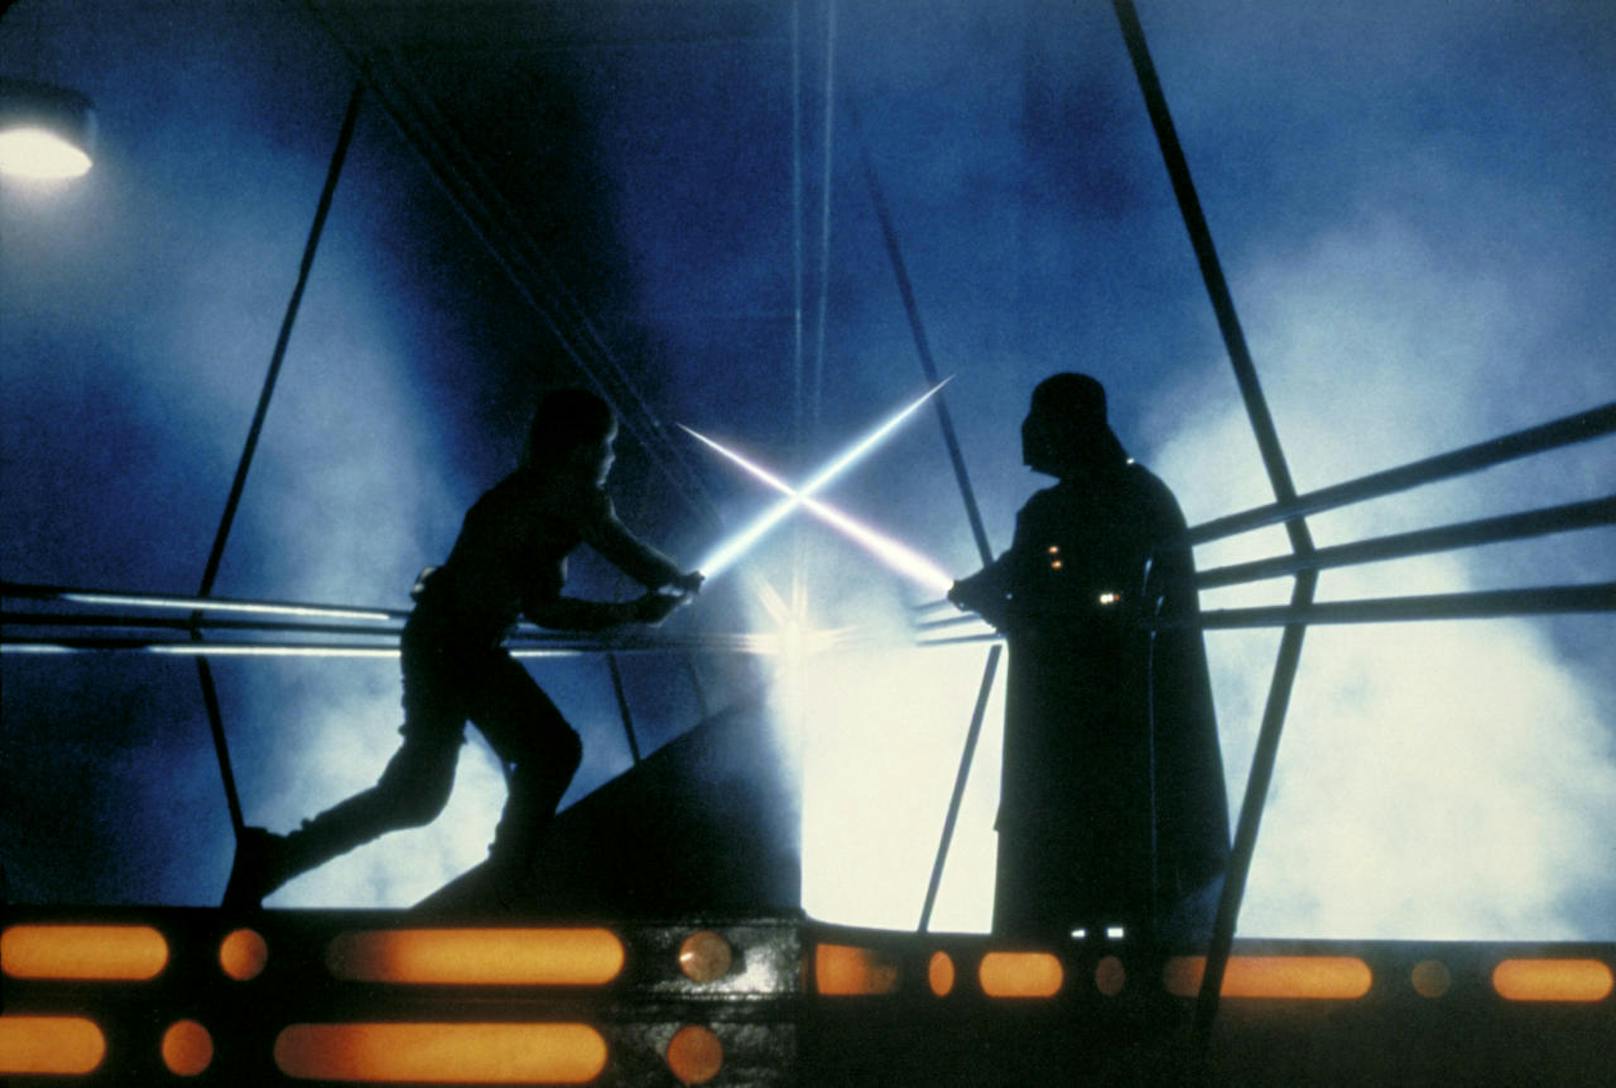 Luke Skywalker duelliert sich mit Darth Vader